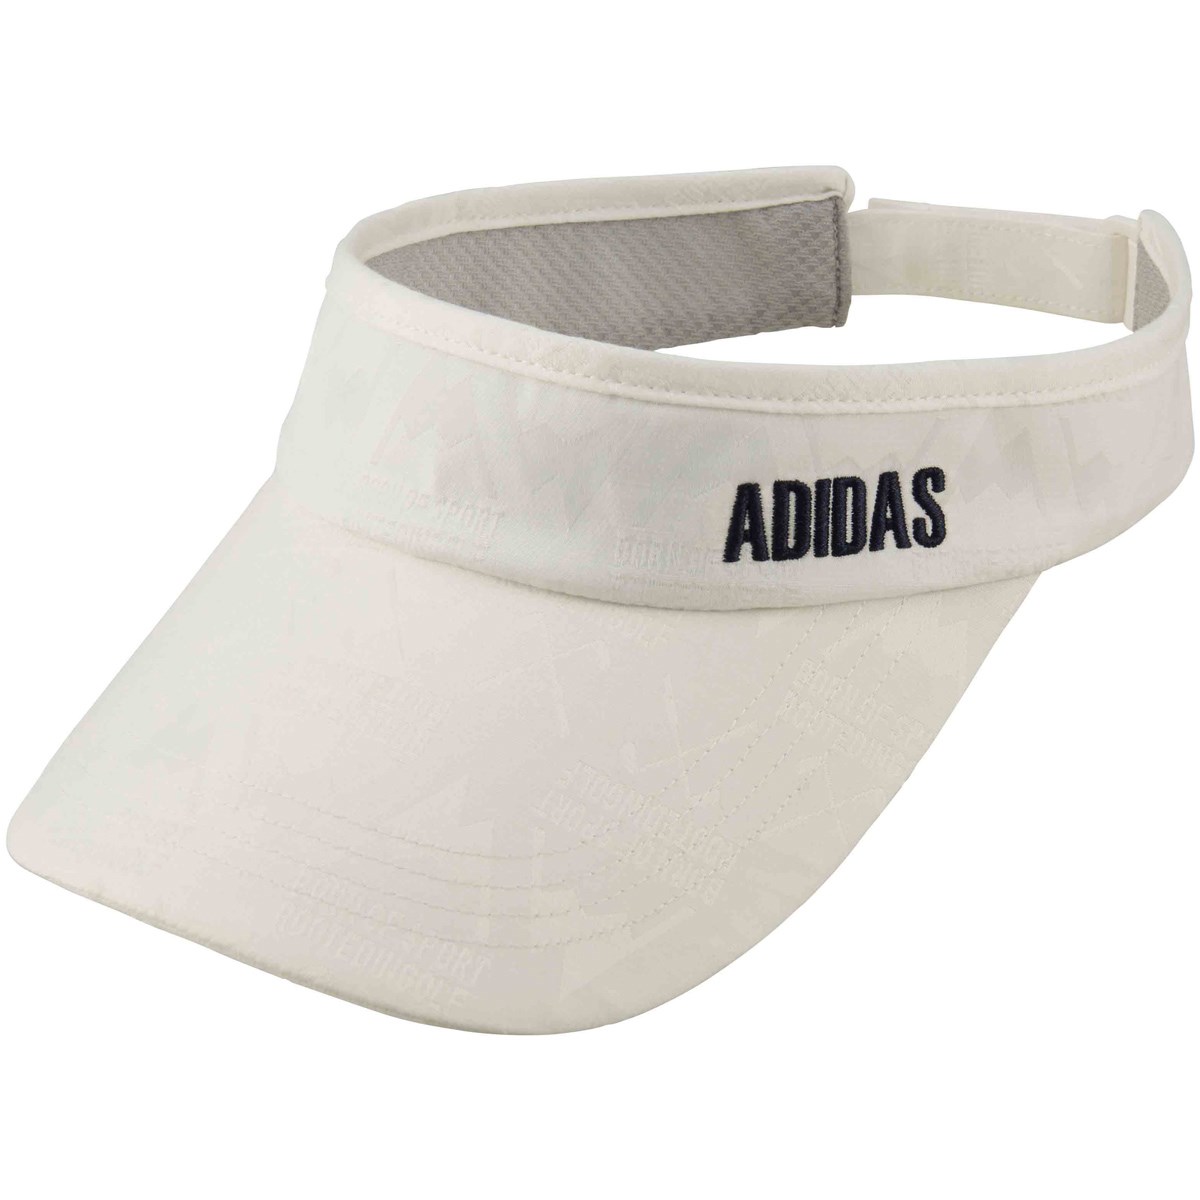 [2018年モデル] アディダス ADICROSS マウンテンサンバイザー ゴルフウェア 帽子の大画像